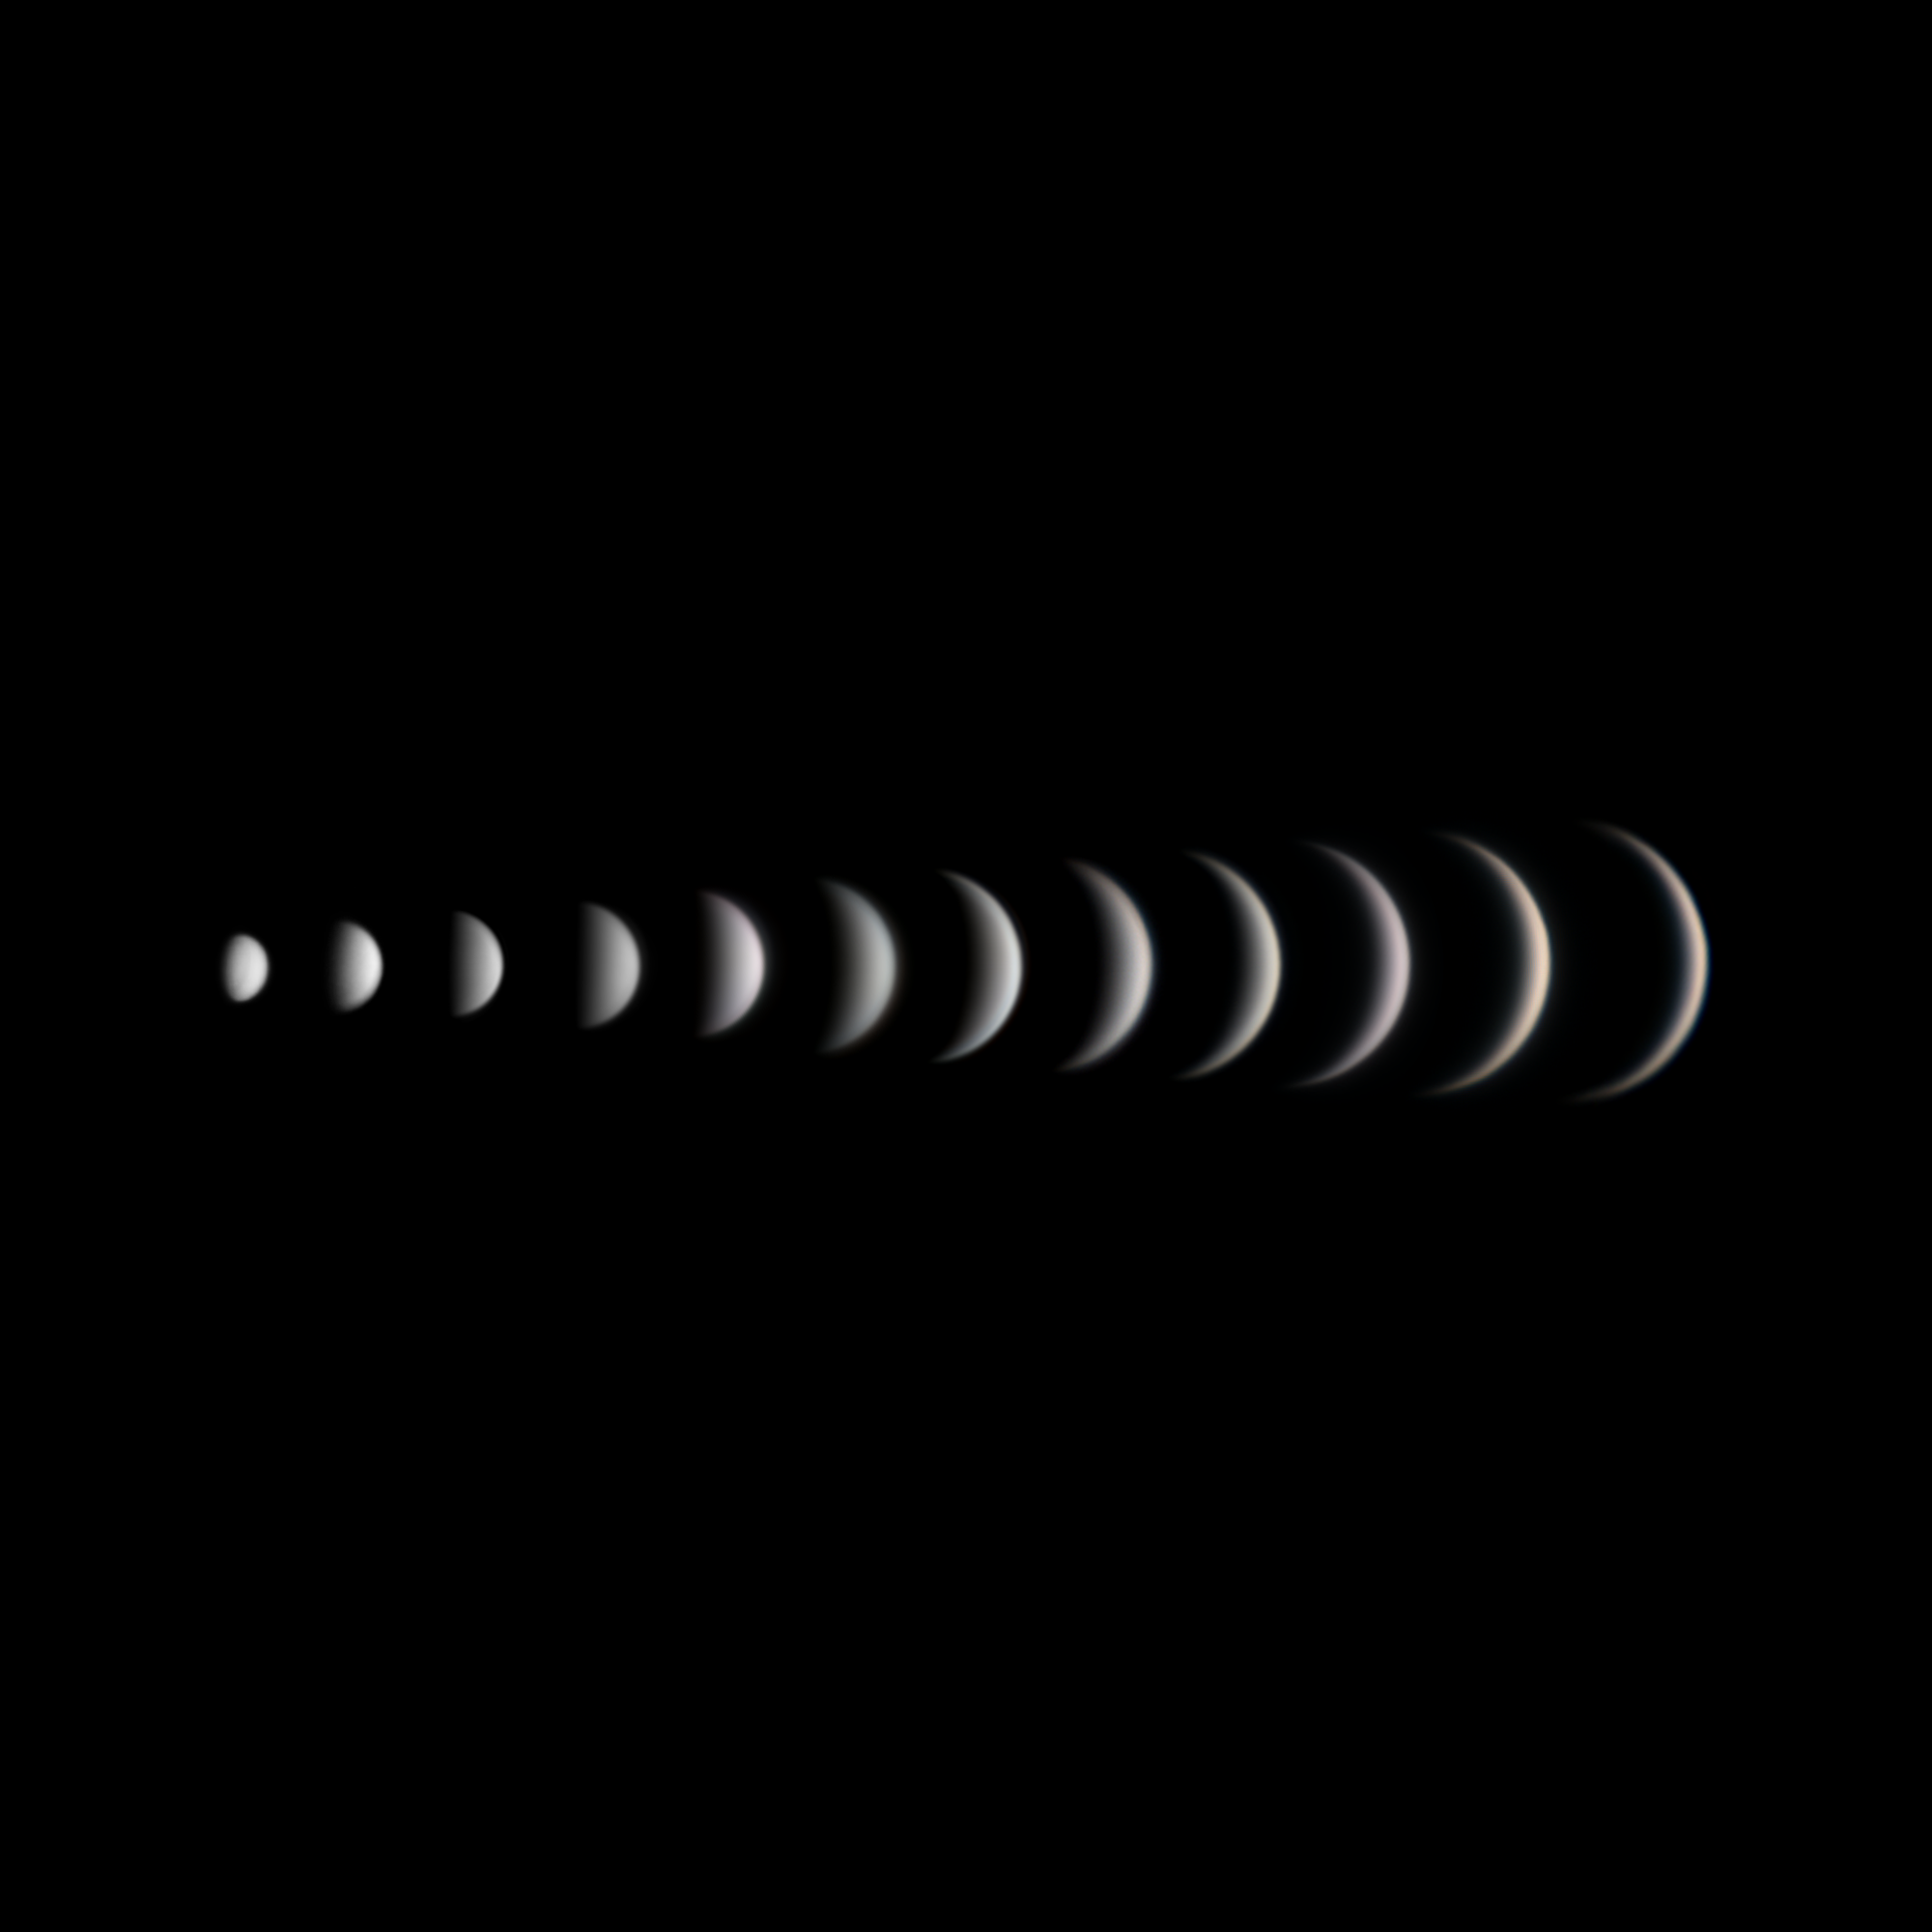 Динамика фазы и угловых размеров Венеры за три месяца съемки.